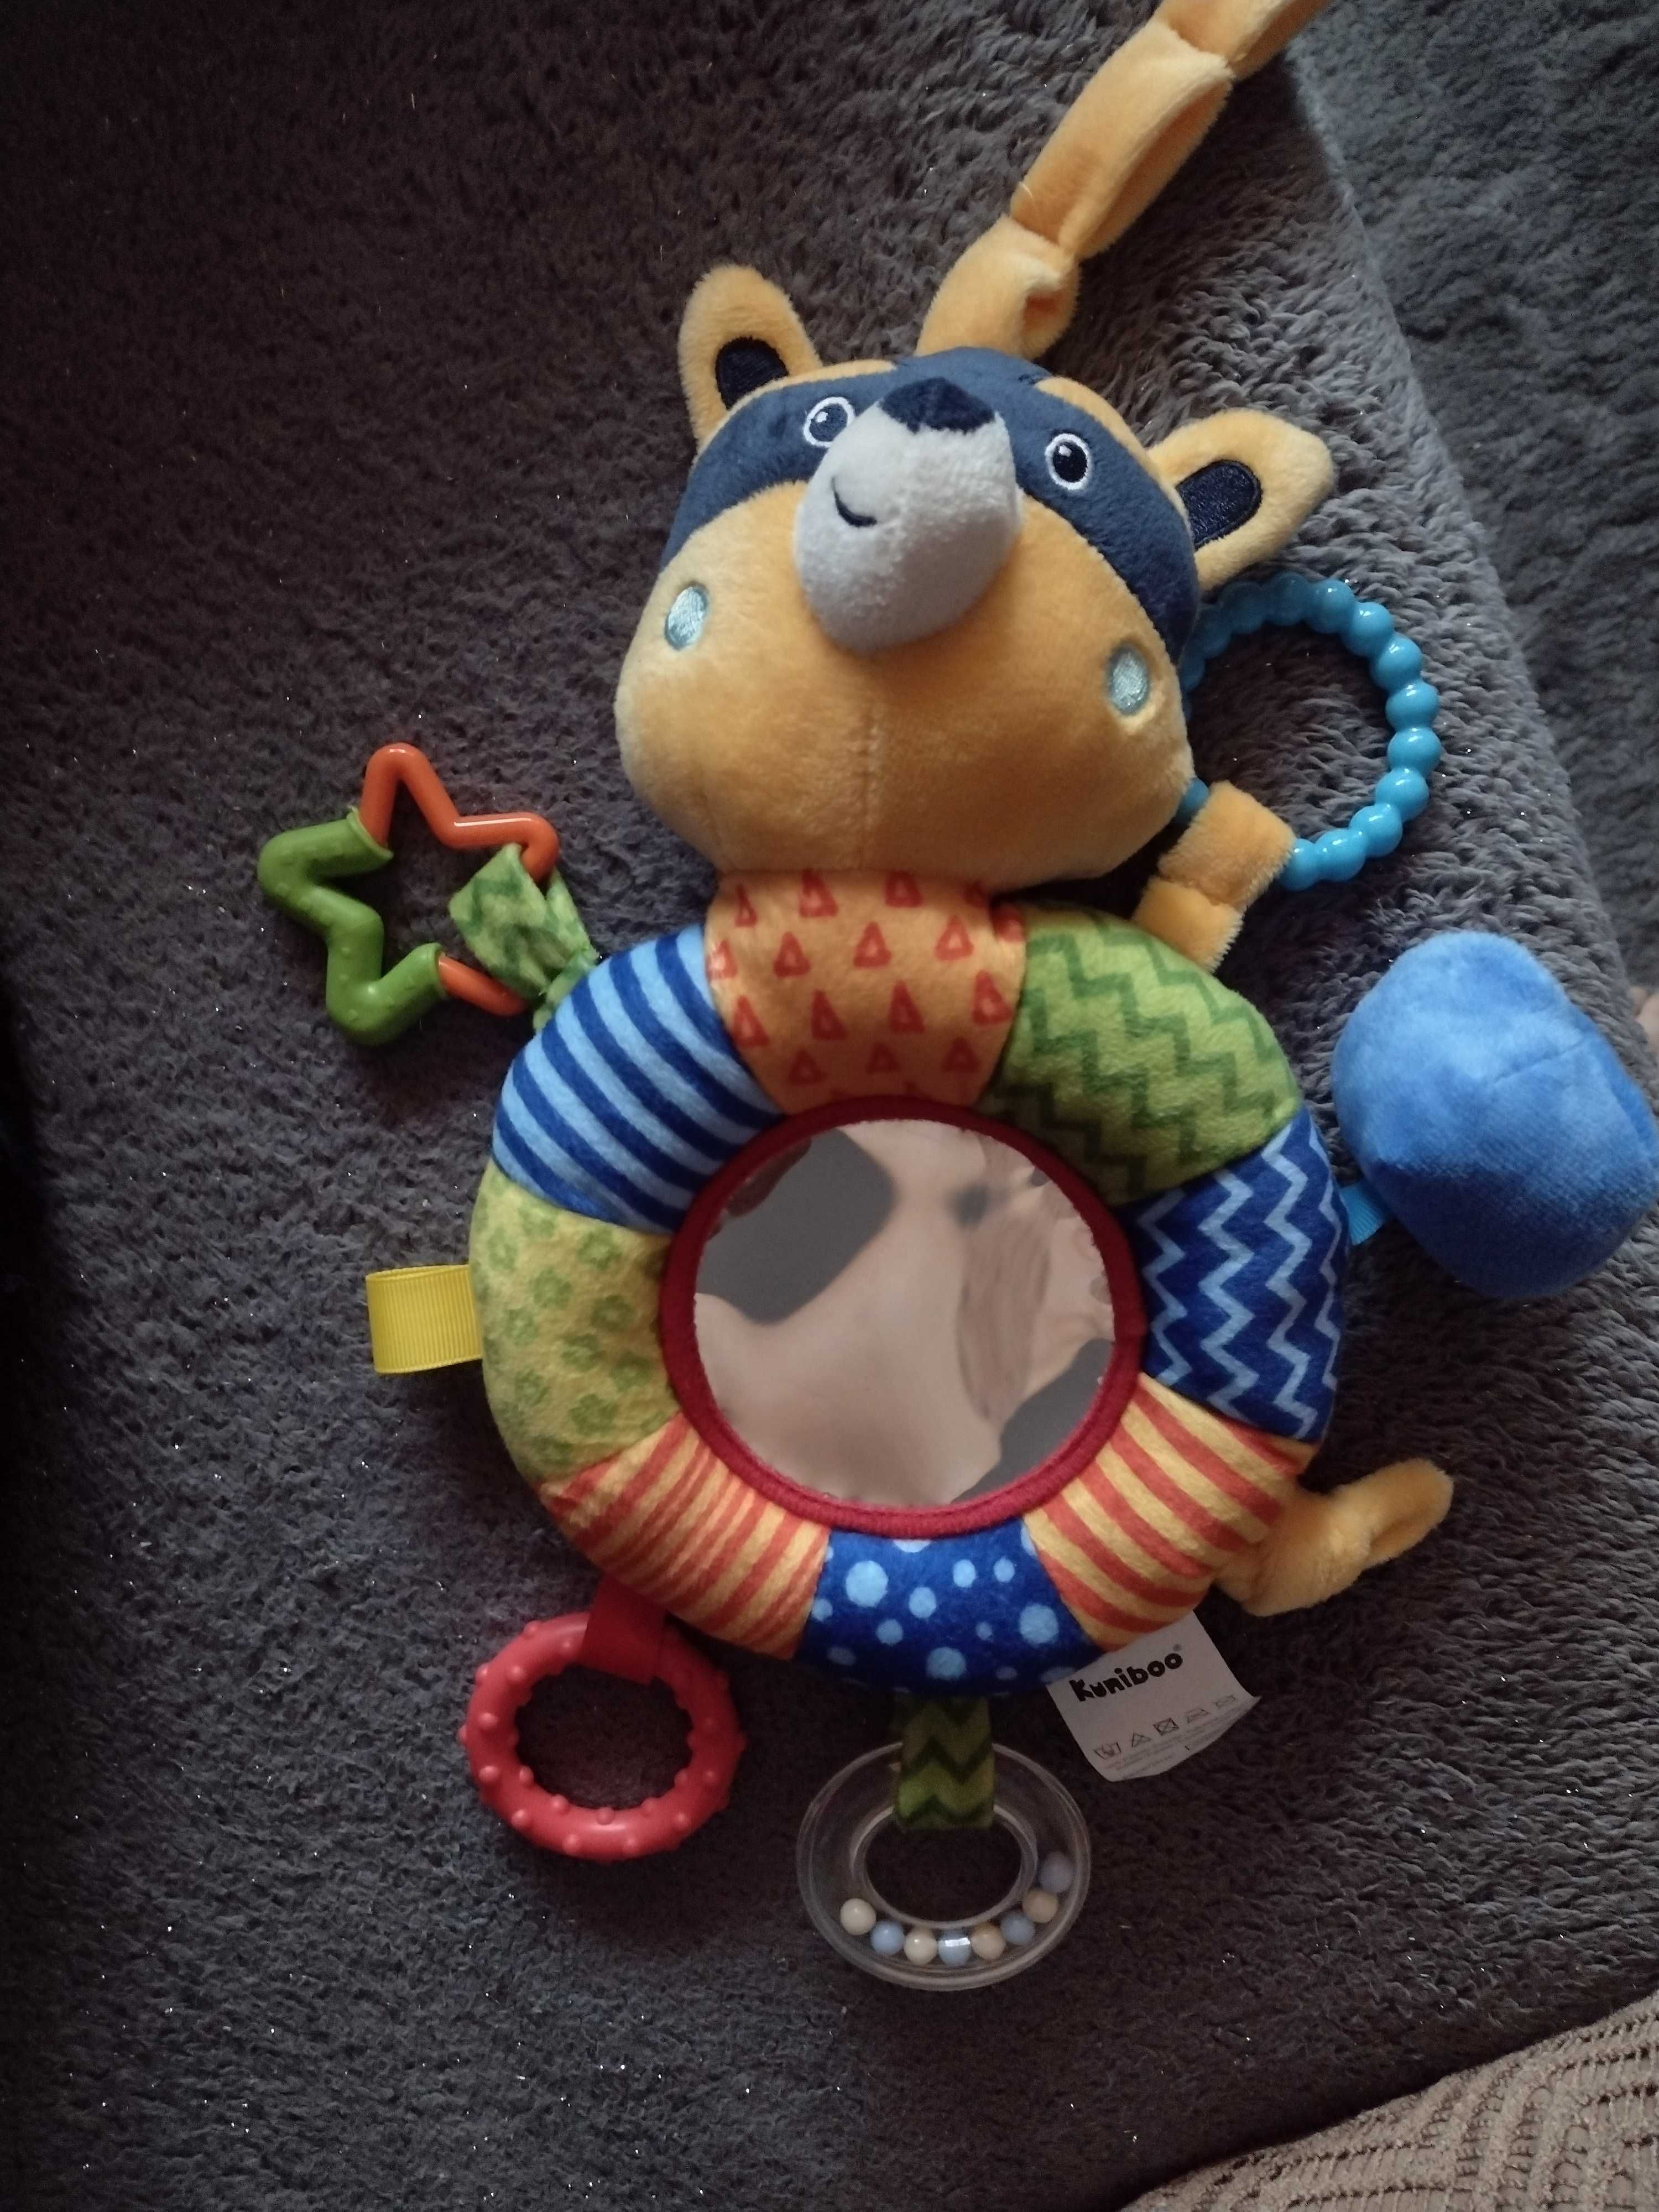 Zabawka sensoryczna dla niemowlaka